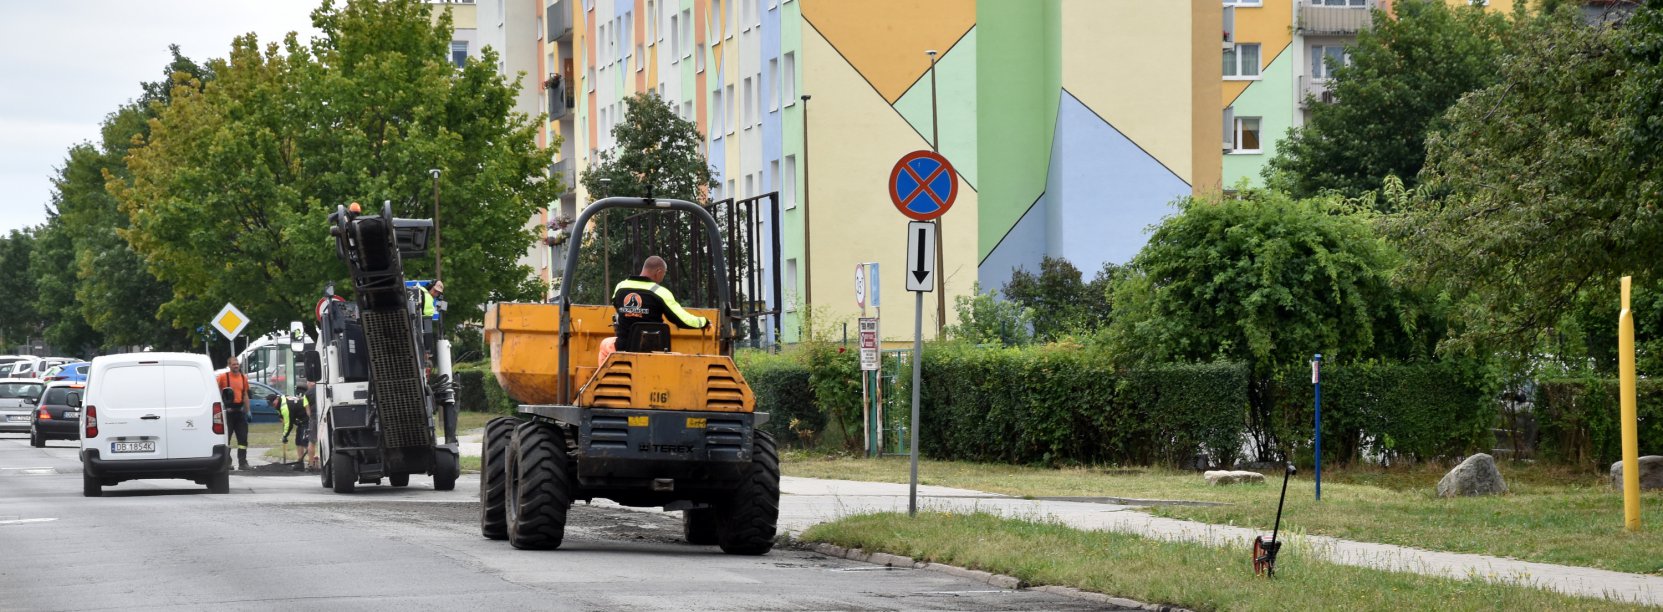 Droga osiedlowa, na części jezdni maszyny do prac drogowych w tle kolorowy blok